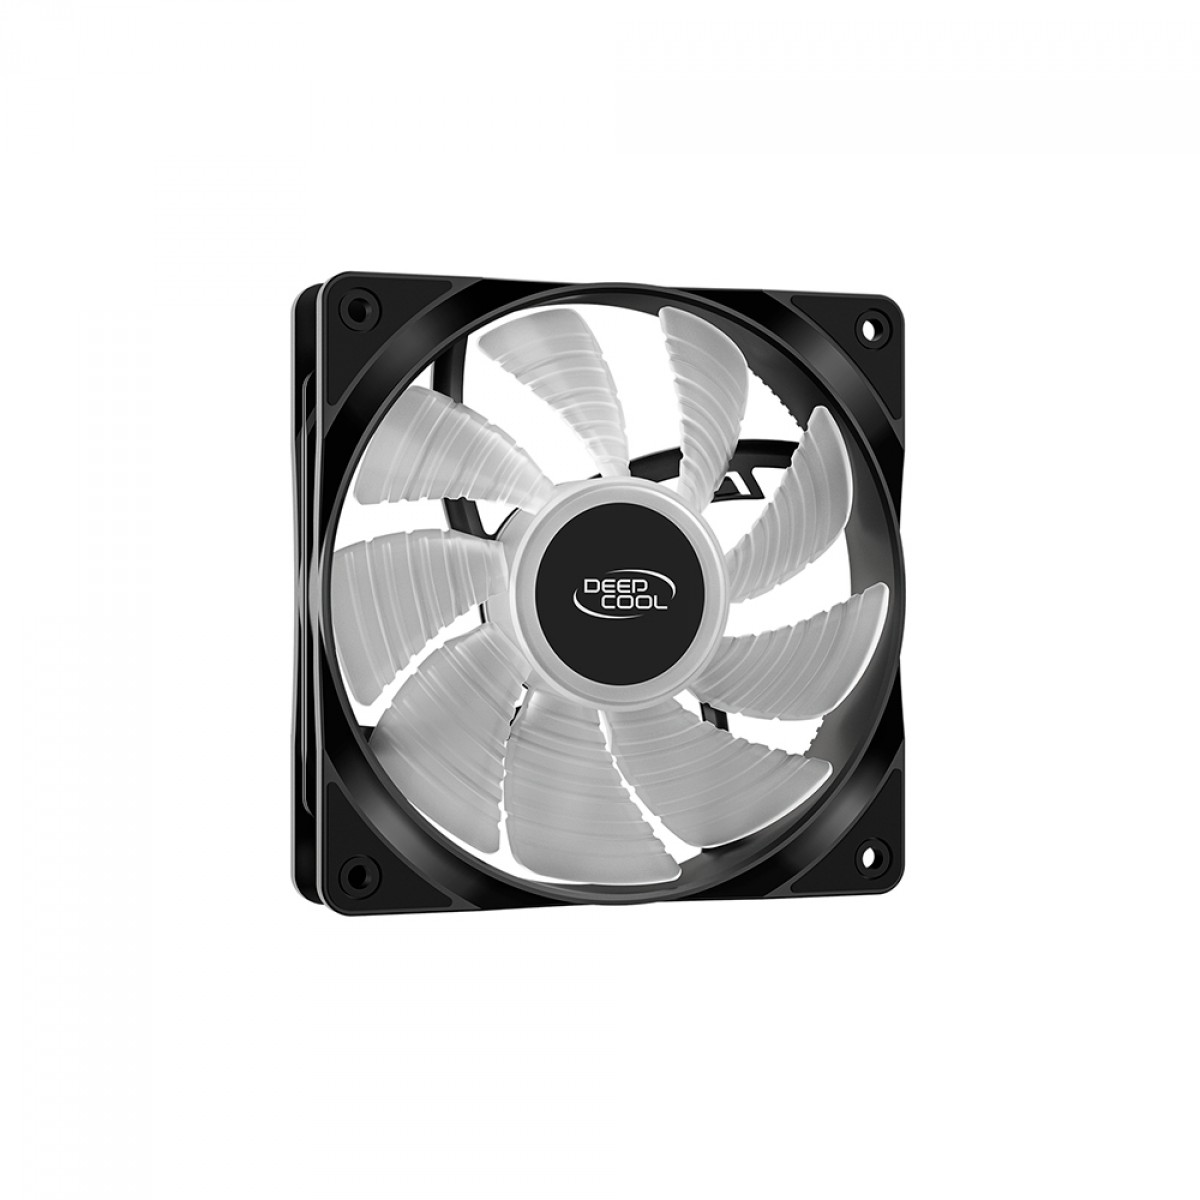 Cooler para Processador DeepCool Gammaxx 400 XT, Rainbow, 120mm, Intel-AMD, DP-MCH4-GMX400-XT